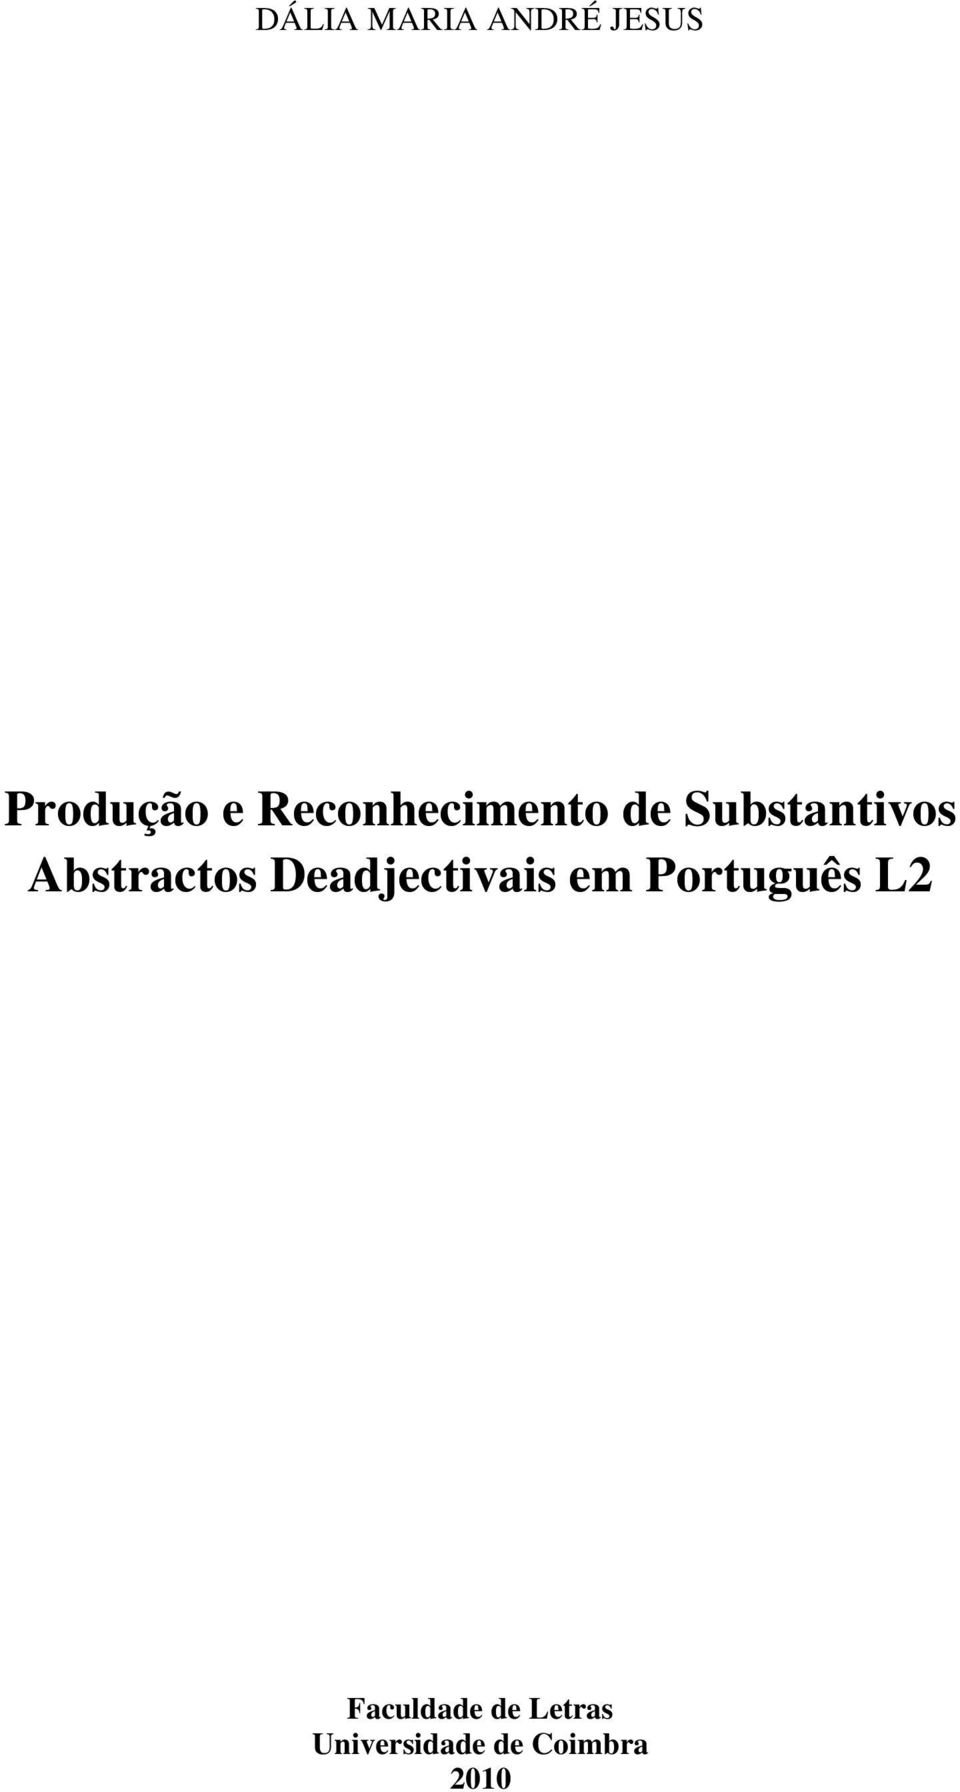 Abstractos Deadjectivais em Português